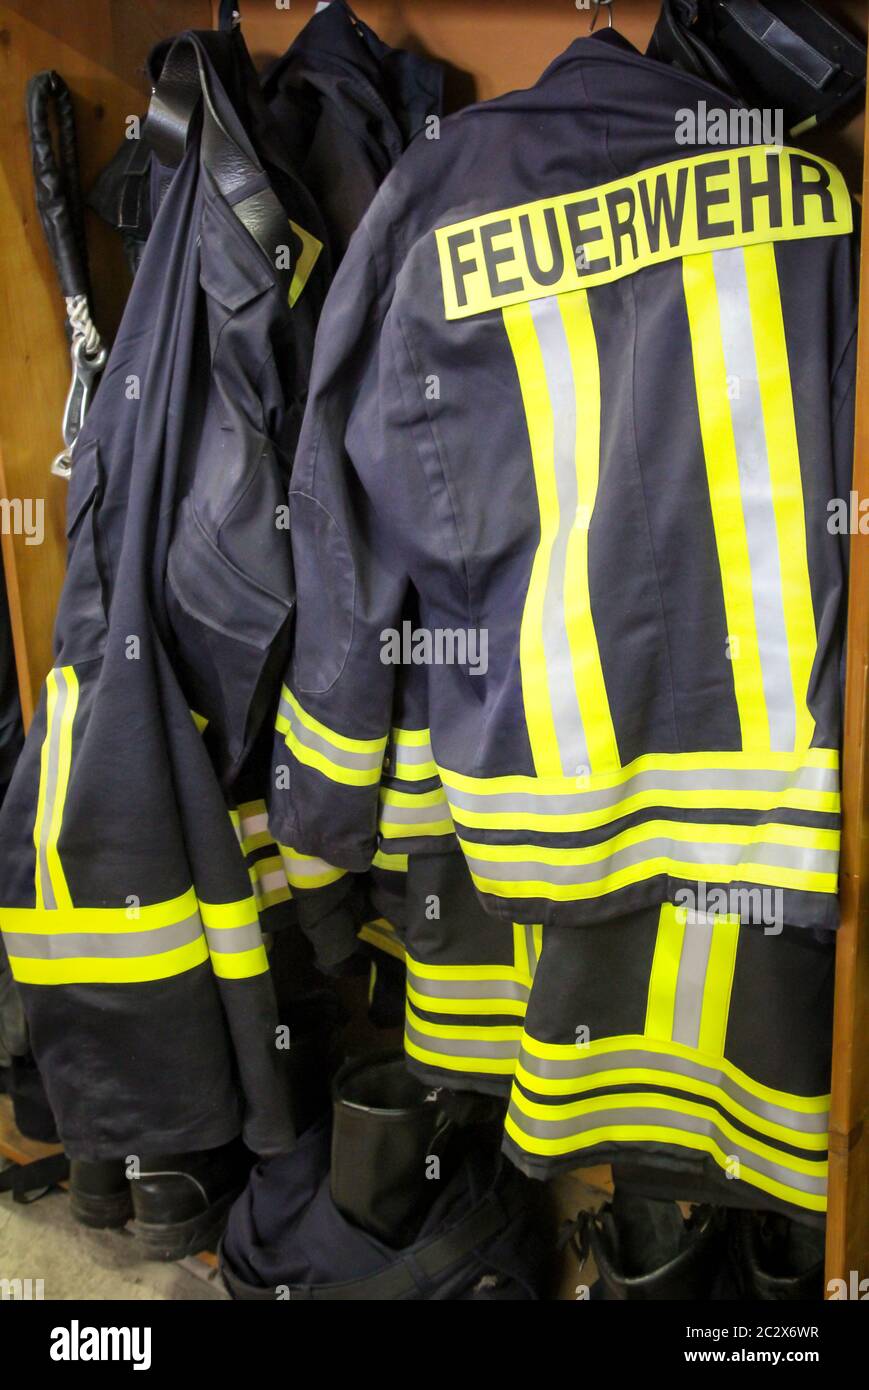 Feuerwehrkleidung, Anzüge, Schutzanzüge bereit zu tragen Stockfotografie -  Alamy